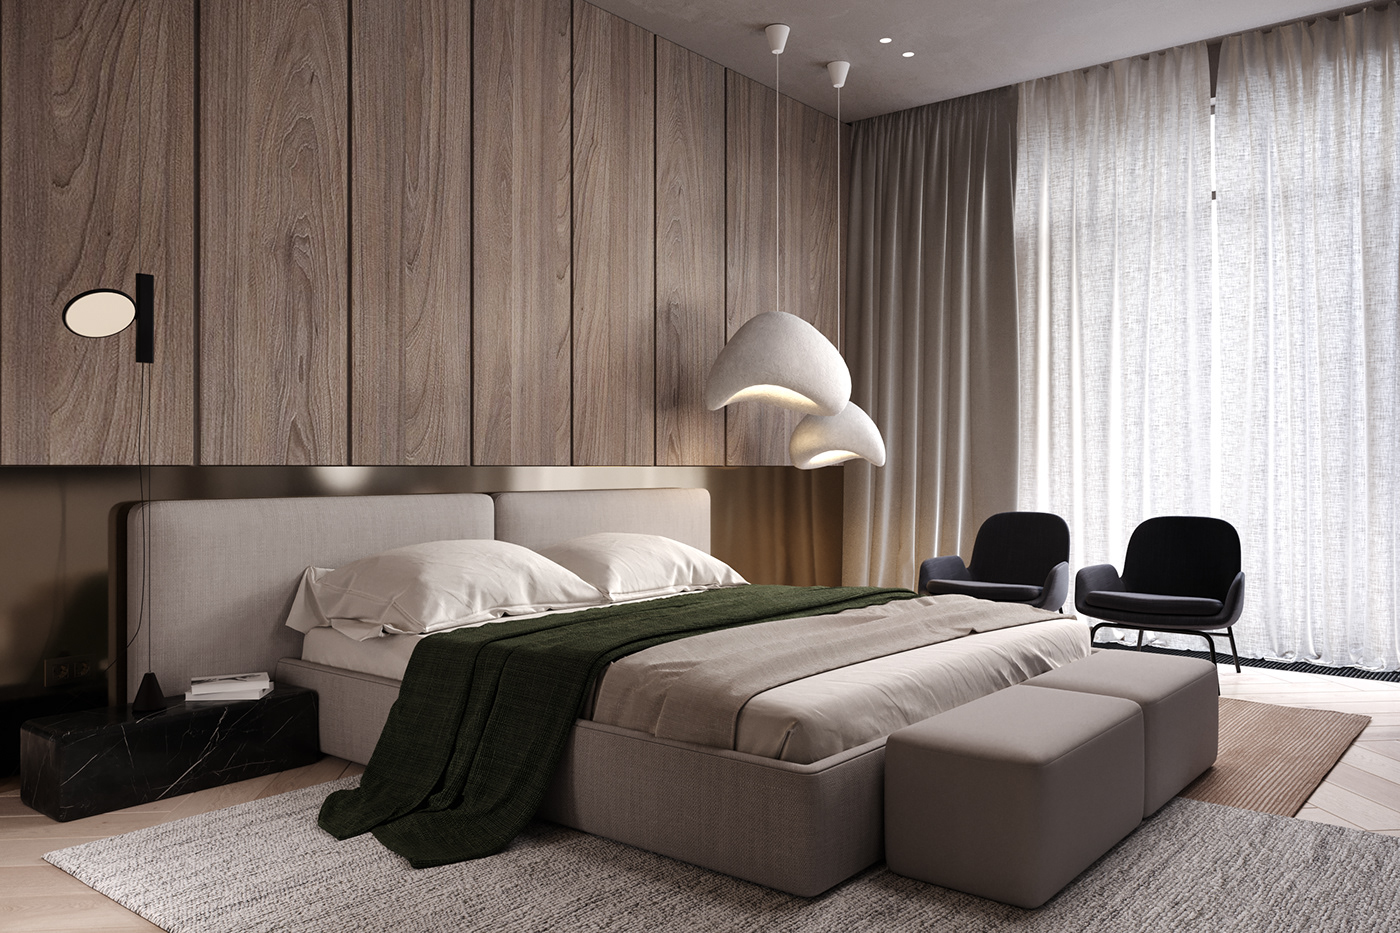 3ds max architecture archviz bedroom bedroom design interior design  modern Modern Design ukraine visualization